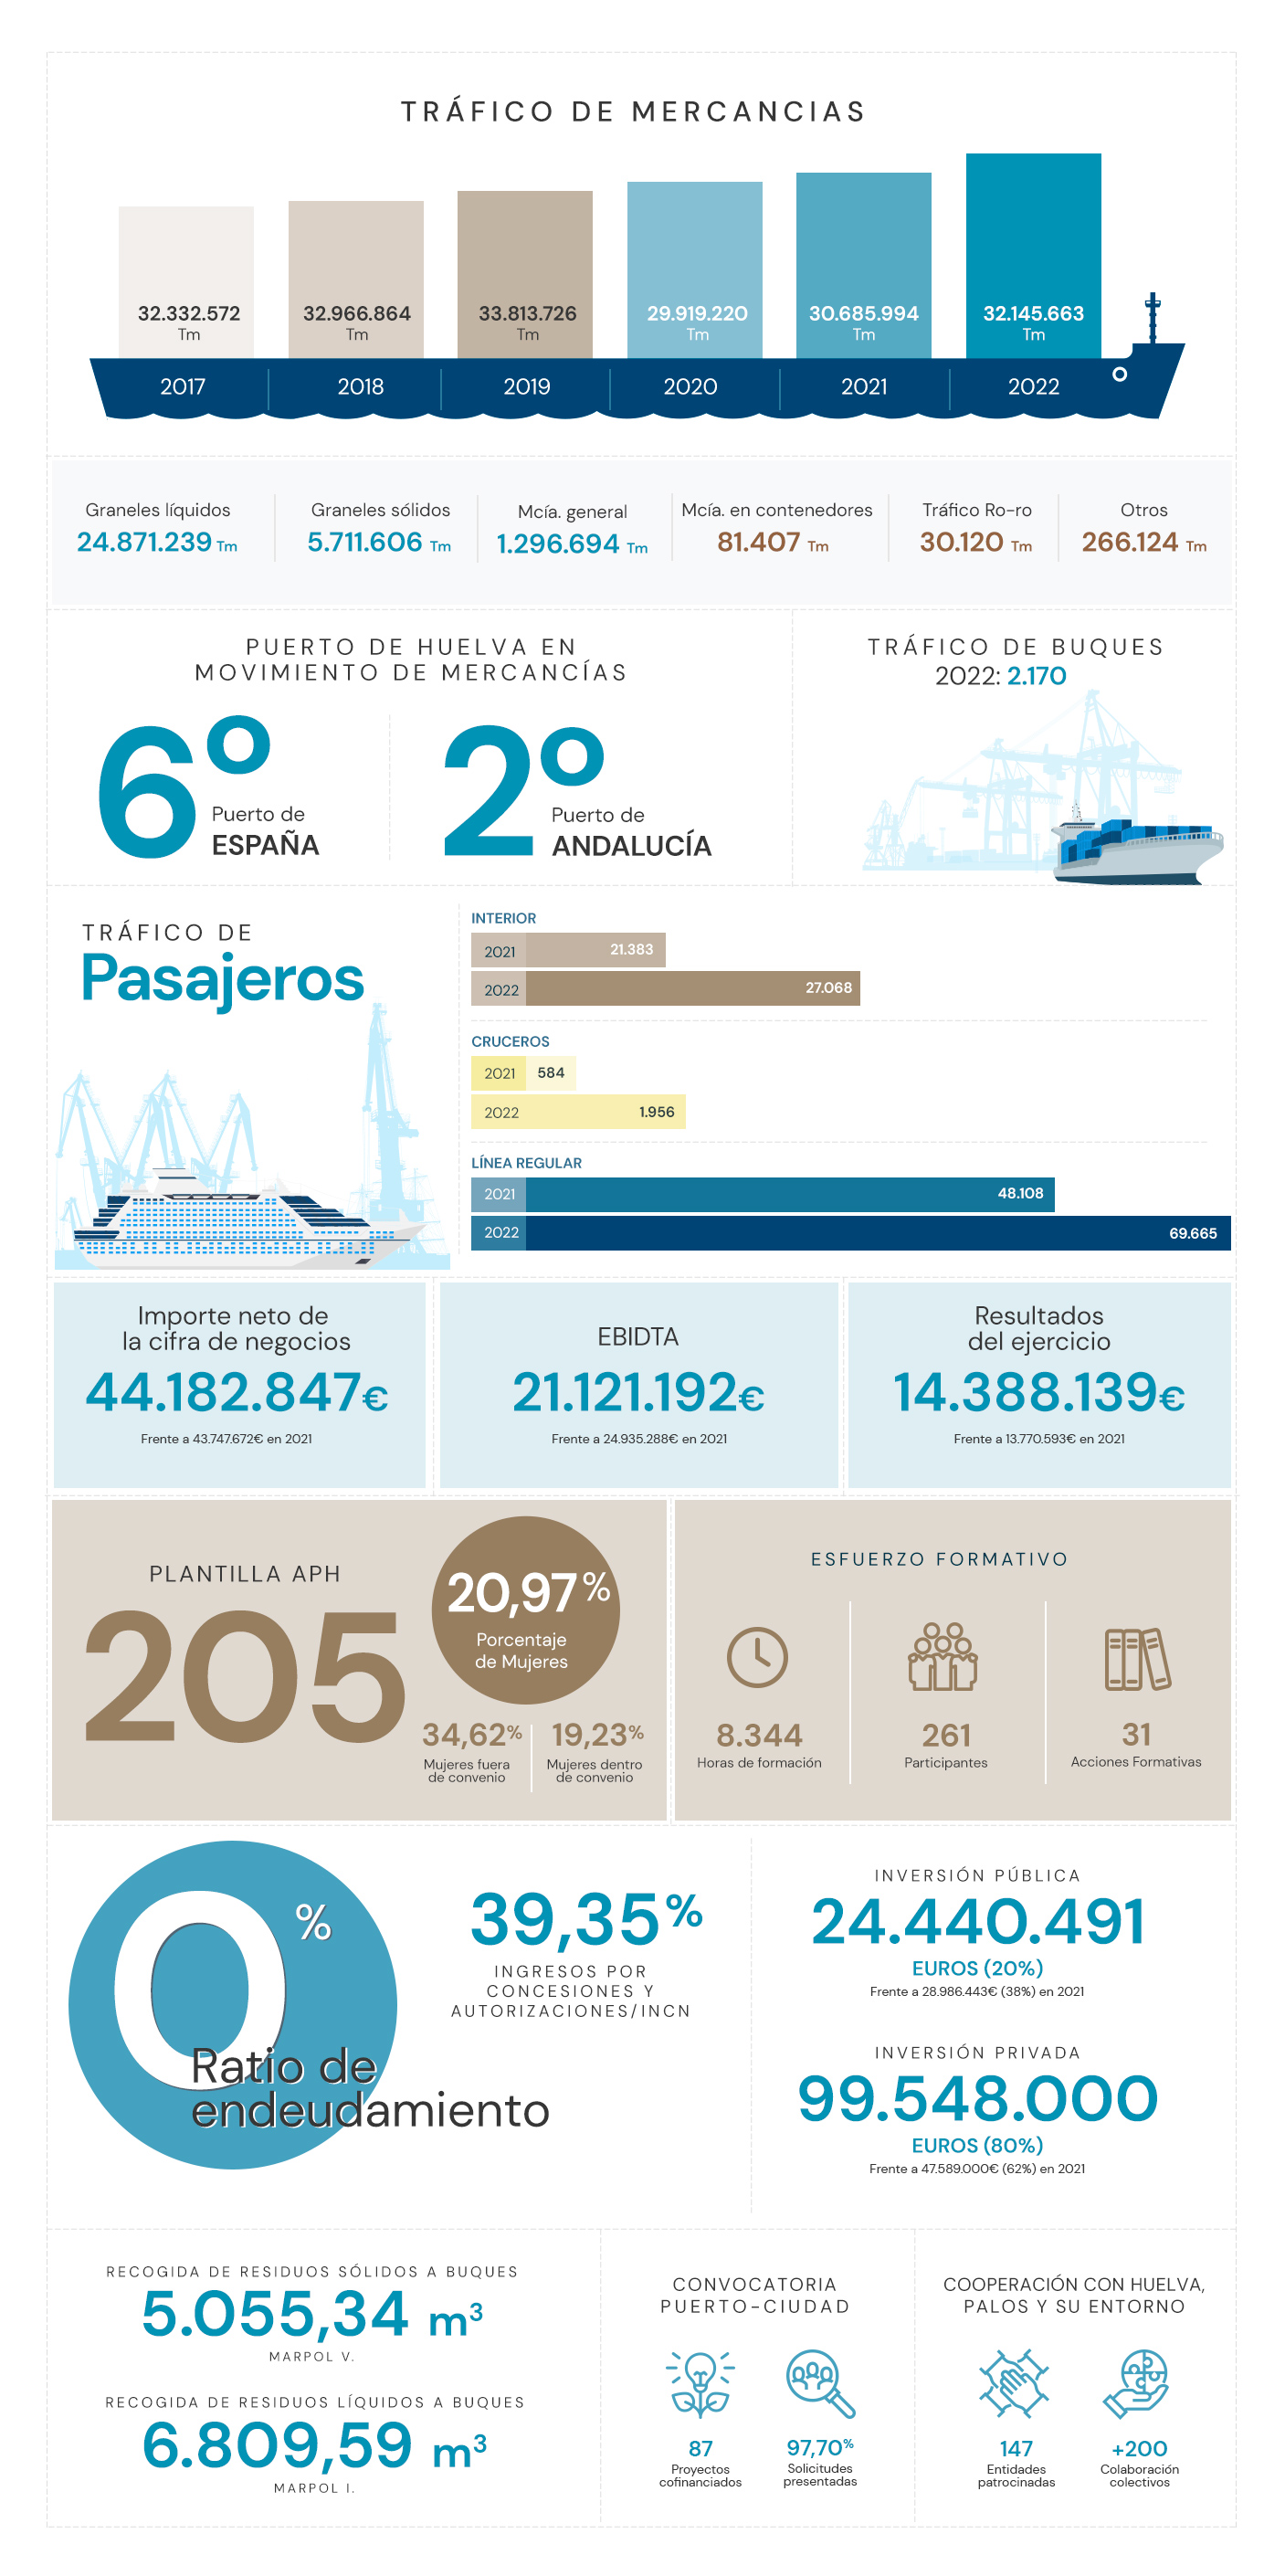 El puerto de Huelva en cifras